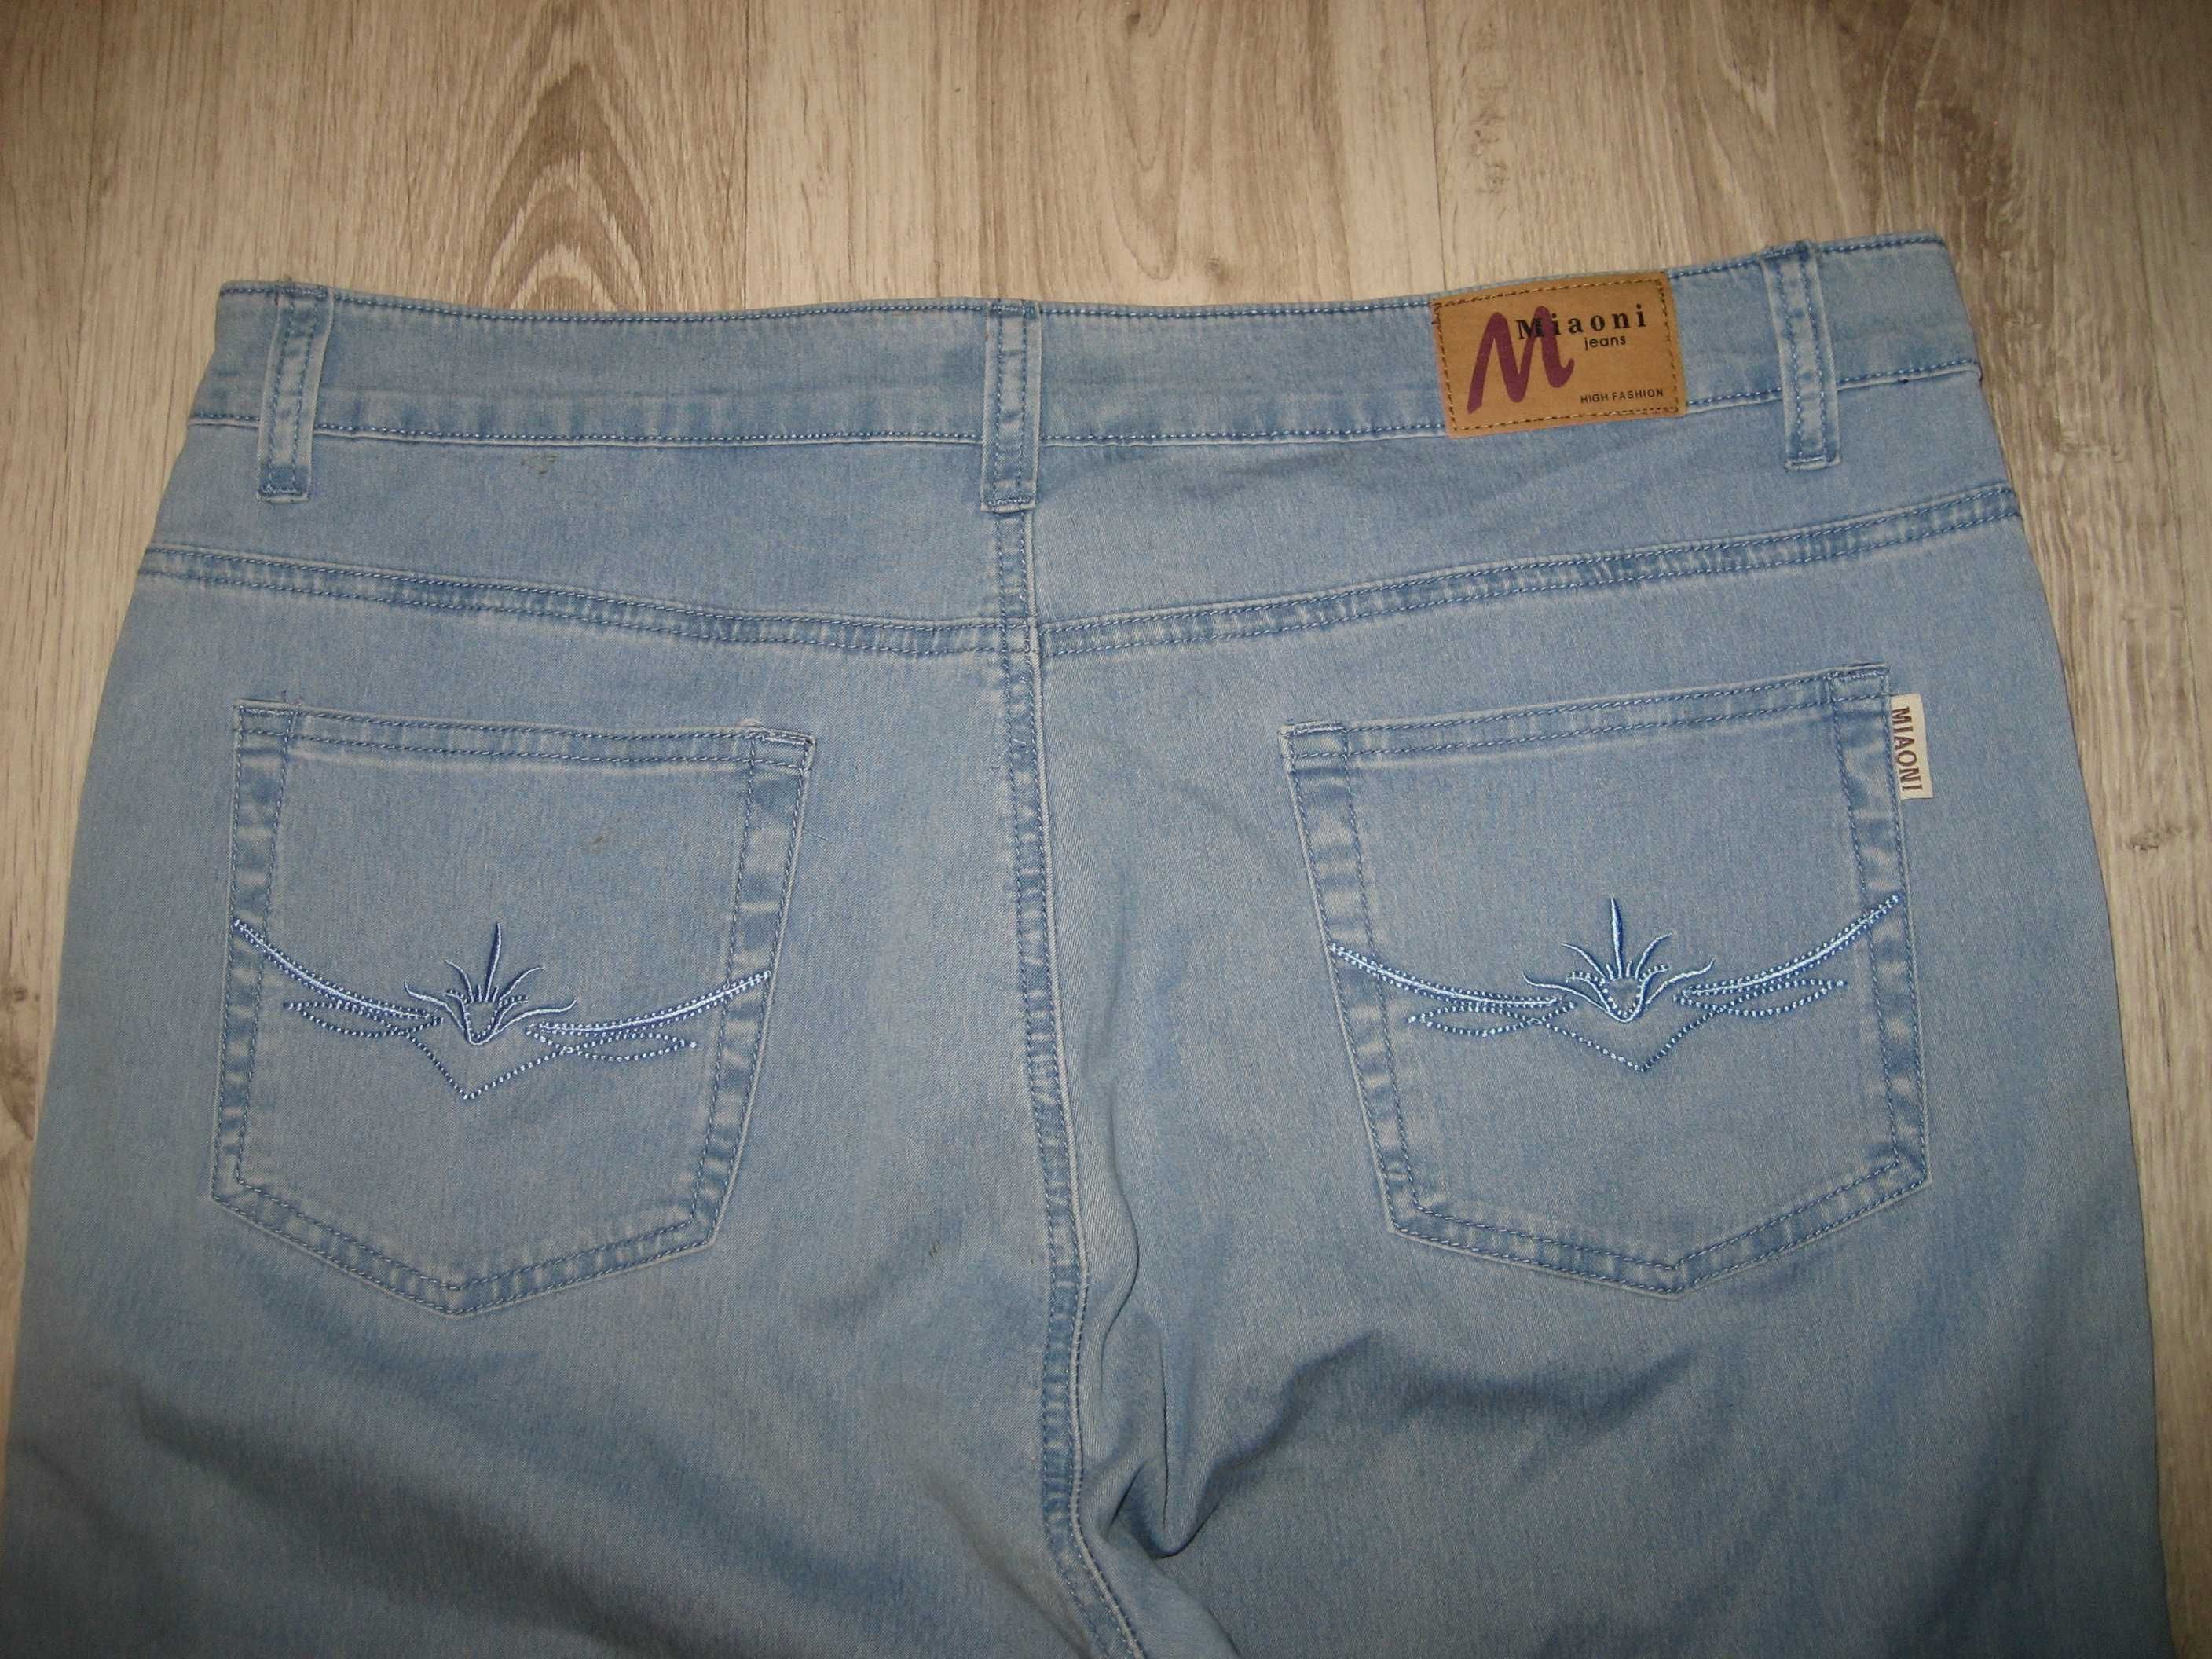 Miaoni - spodnie jeans rybaczki z lycrą 46/48